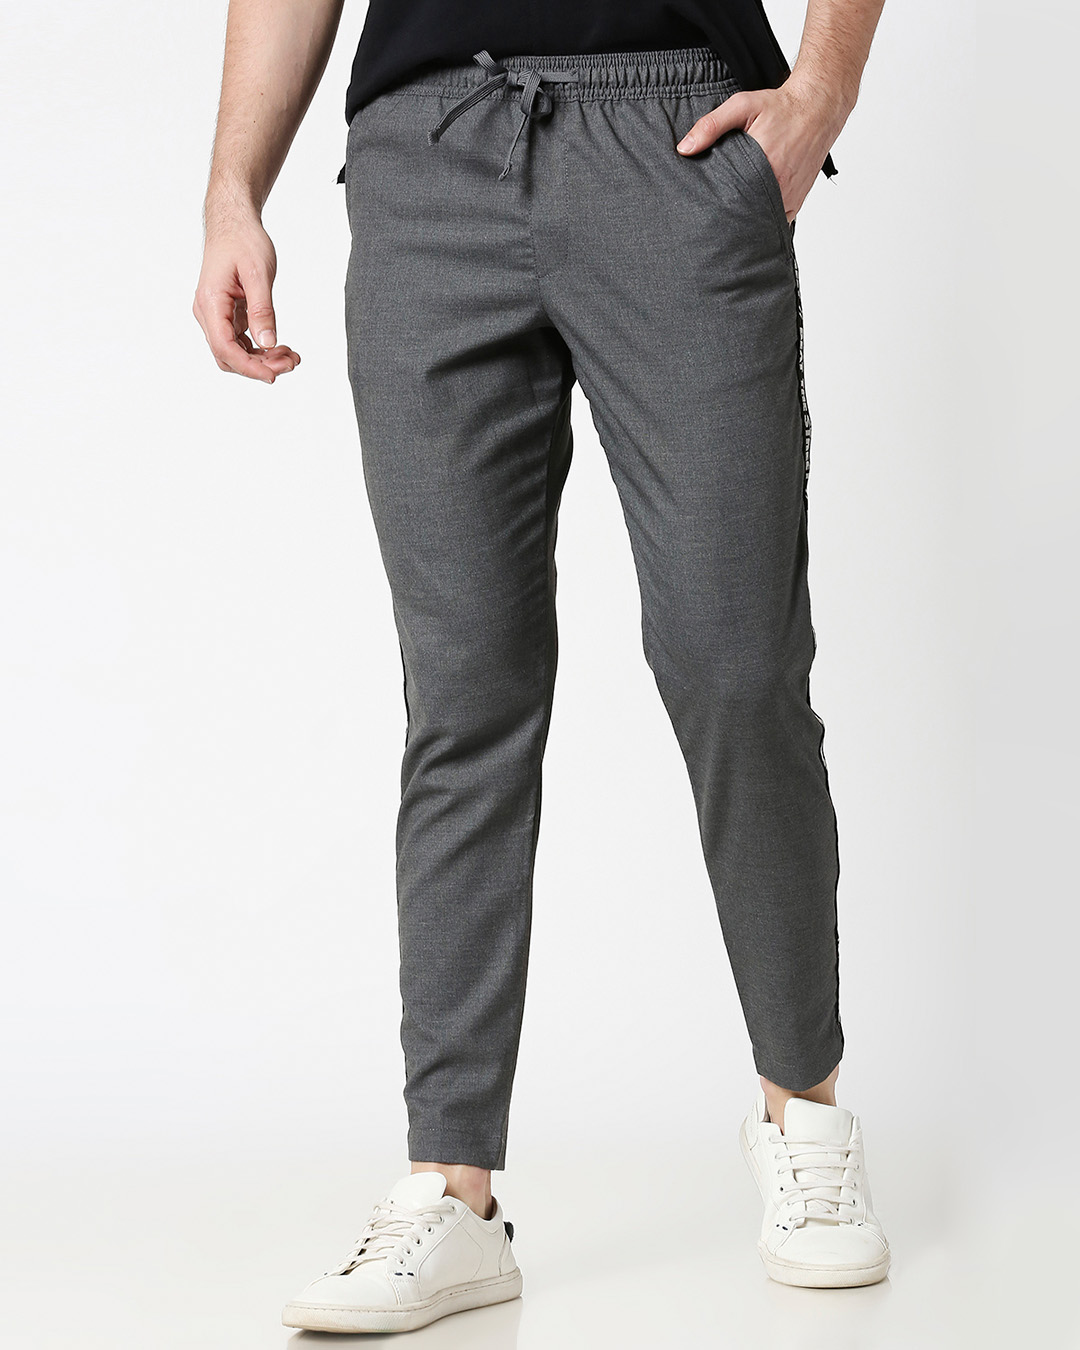 Buy Grey Men's Casual Jogger Pants for Men grey Online at Bewakoof